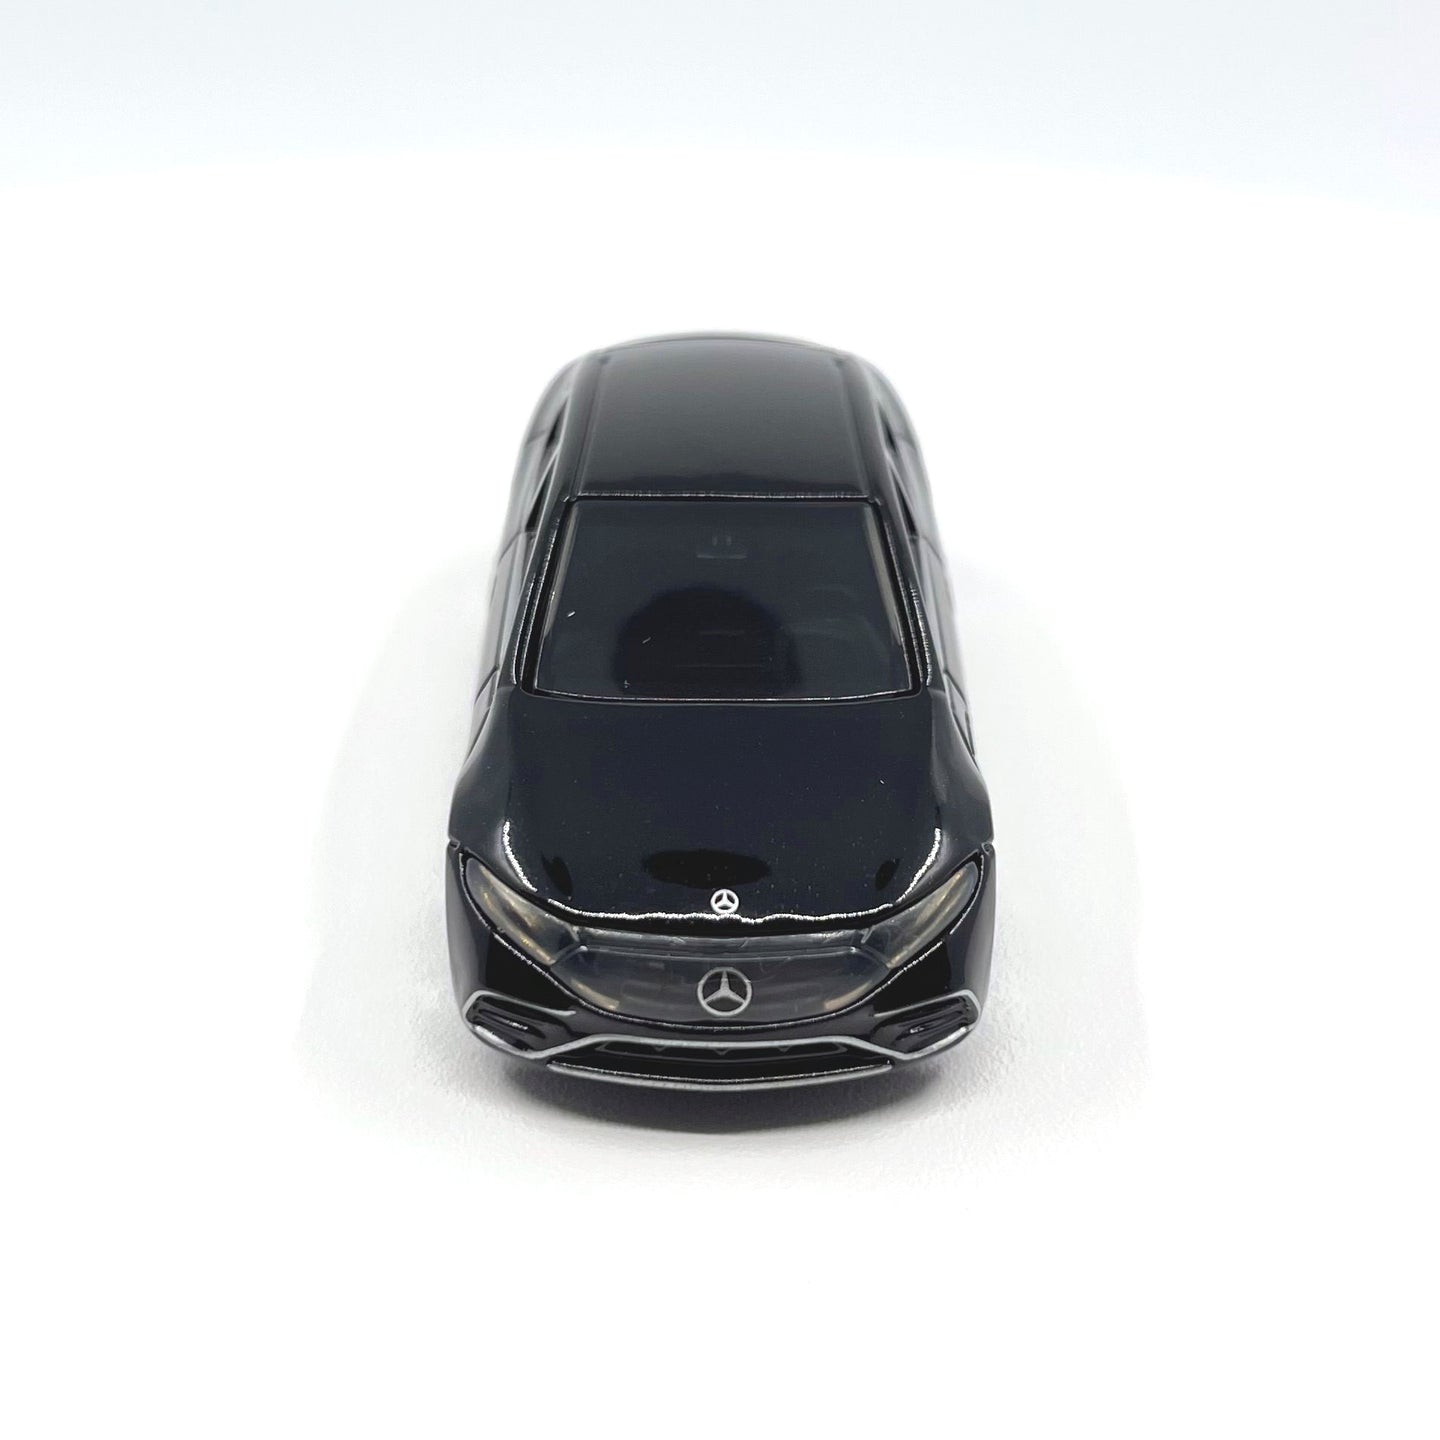 1:68 Eqs Mercedes-EQ Alloy Diecast Car Model by Takara Tomy